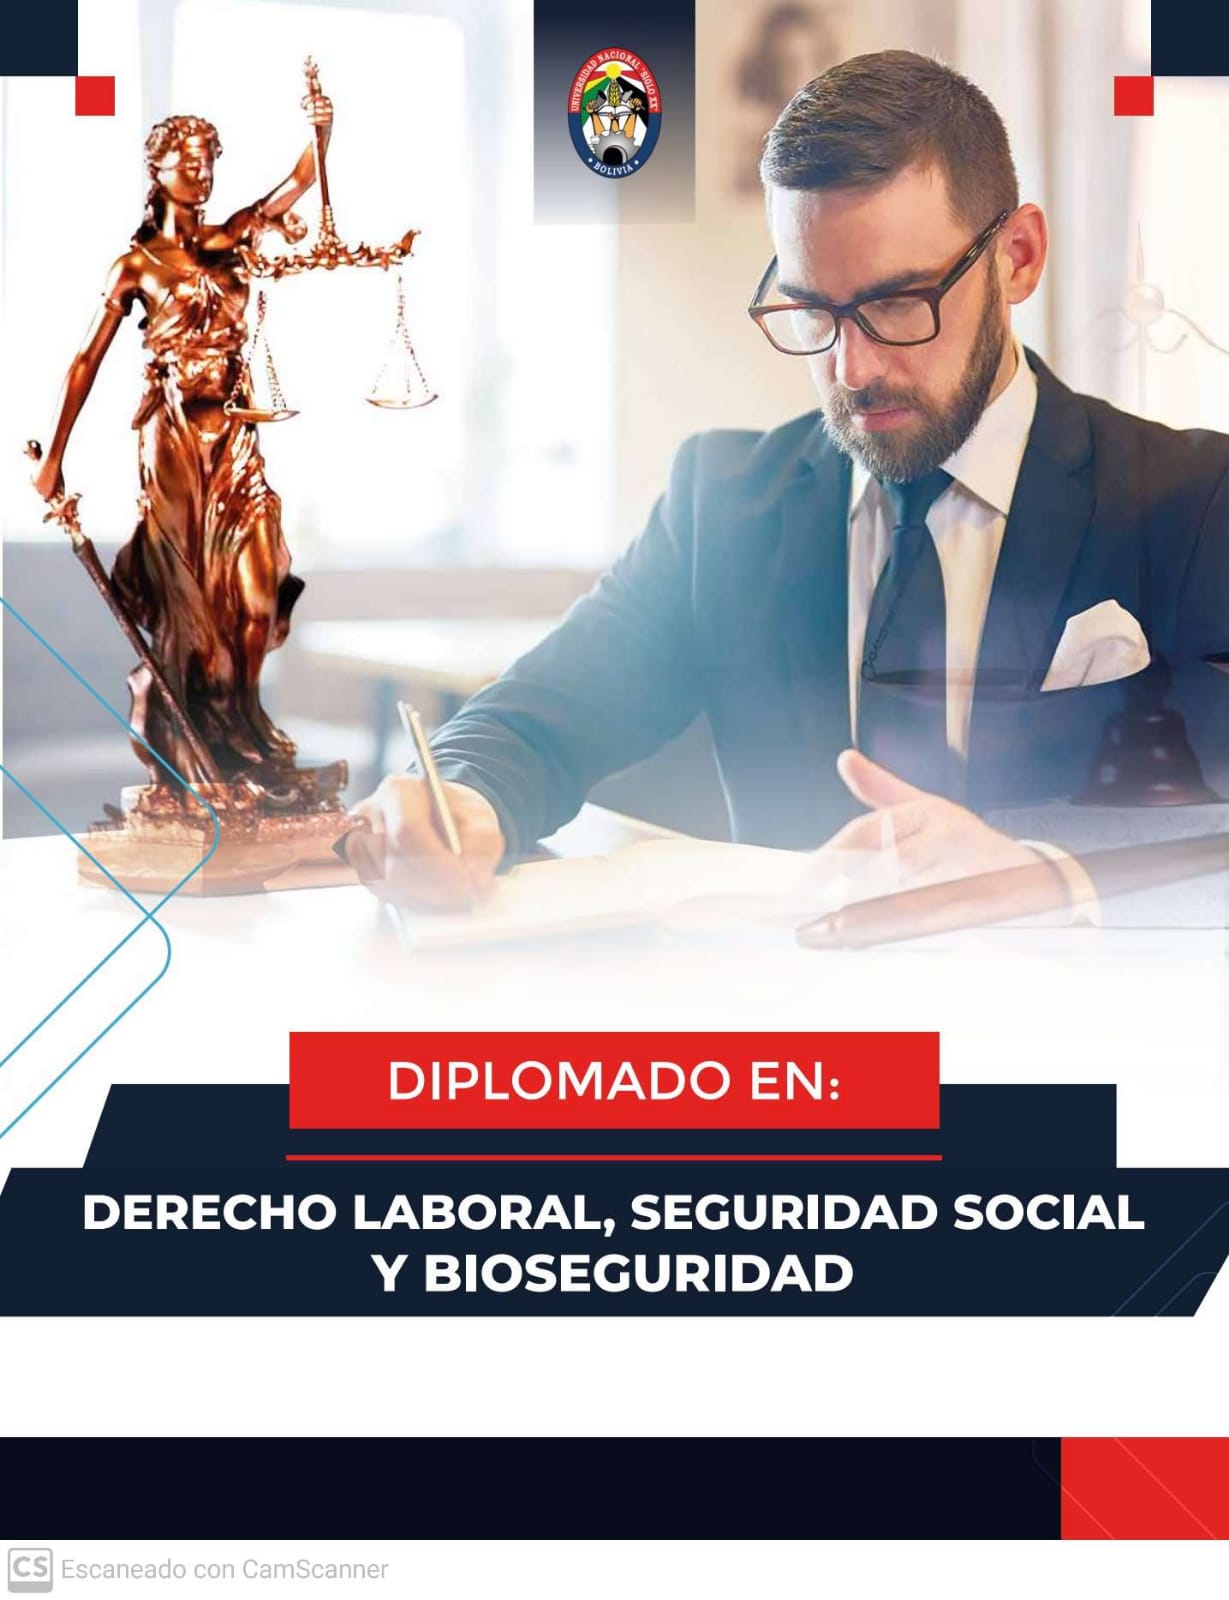 Diplomado Derecho Laboral, Seguridad Social Y Bioseguridad